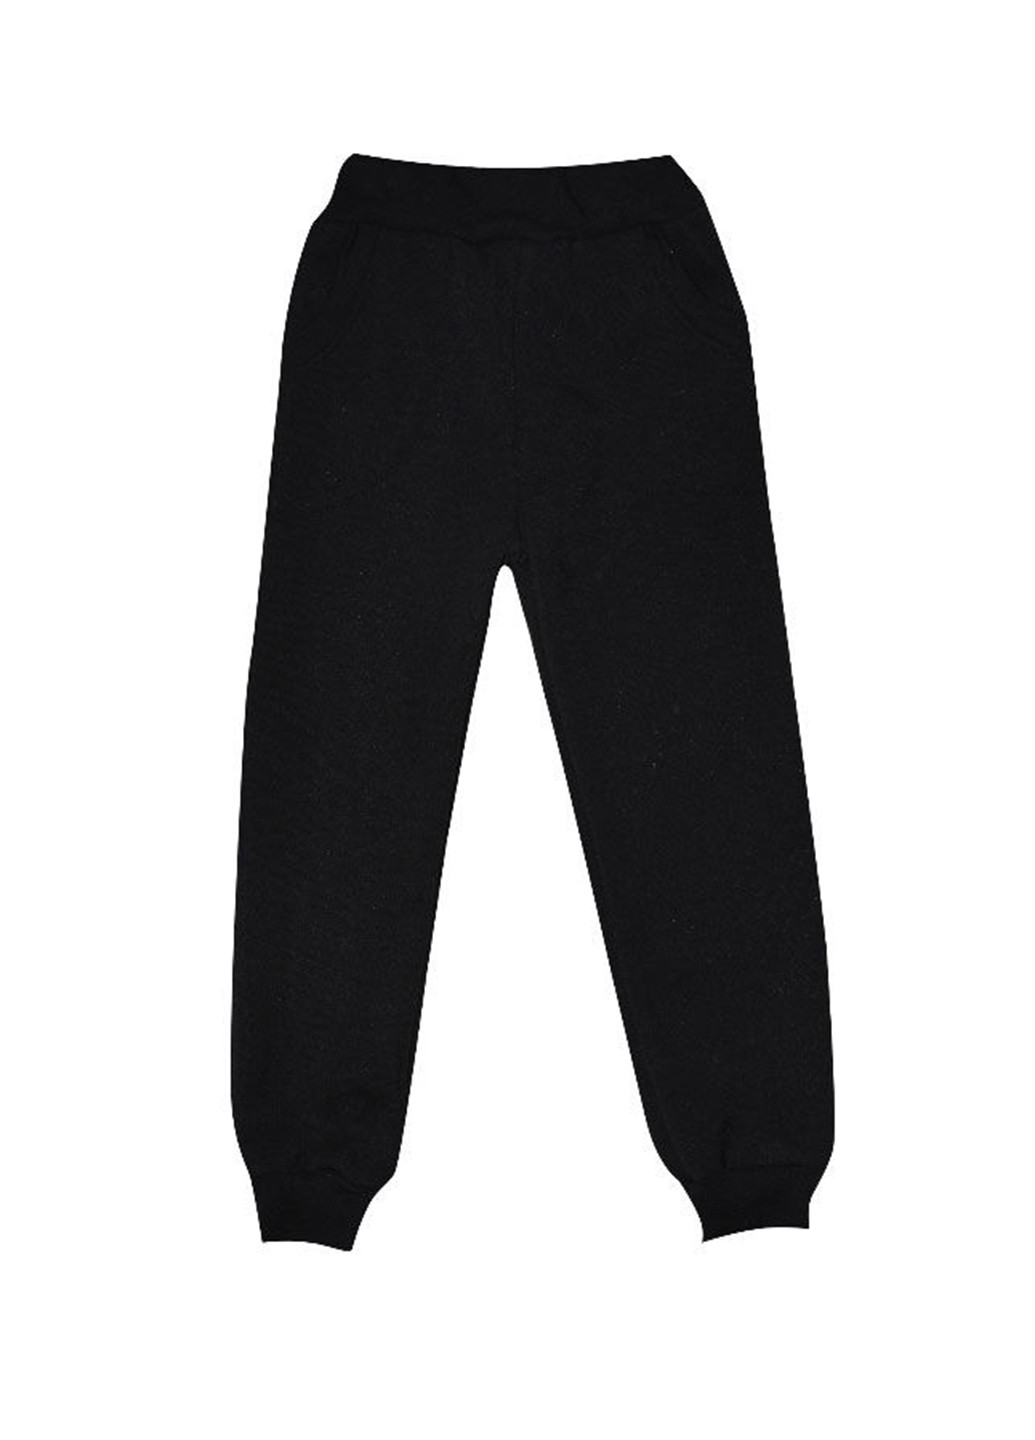 Черные спортивные демисезонные брюки со средней талией Blanka